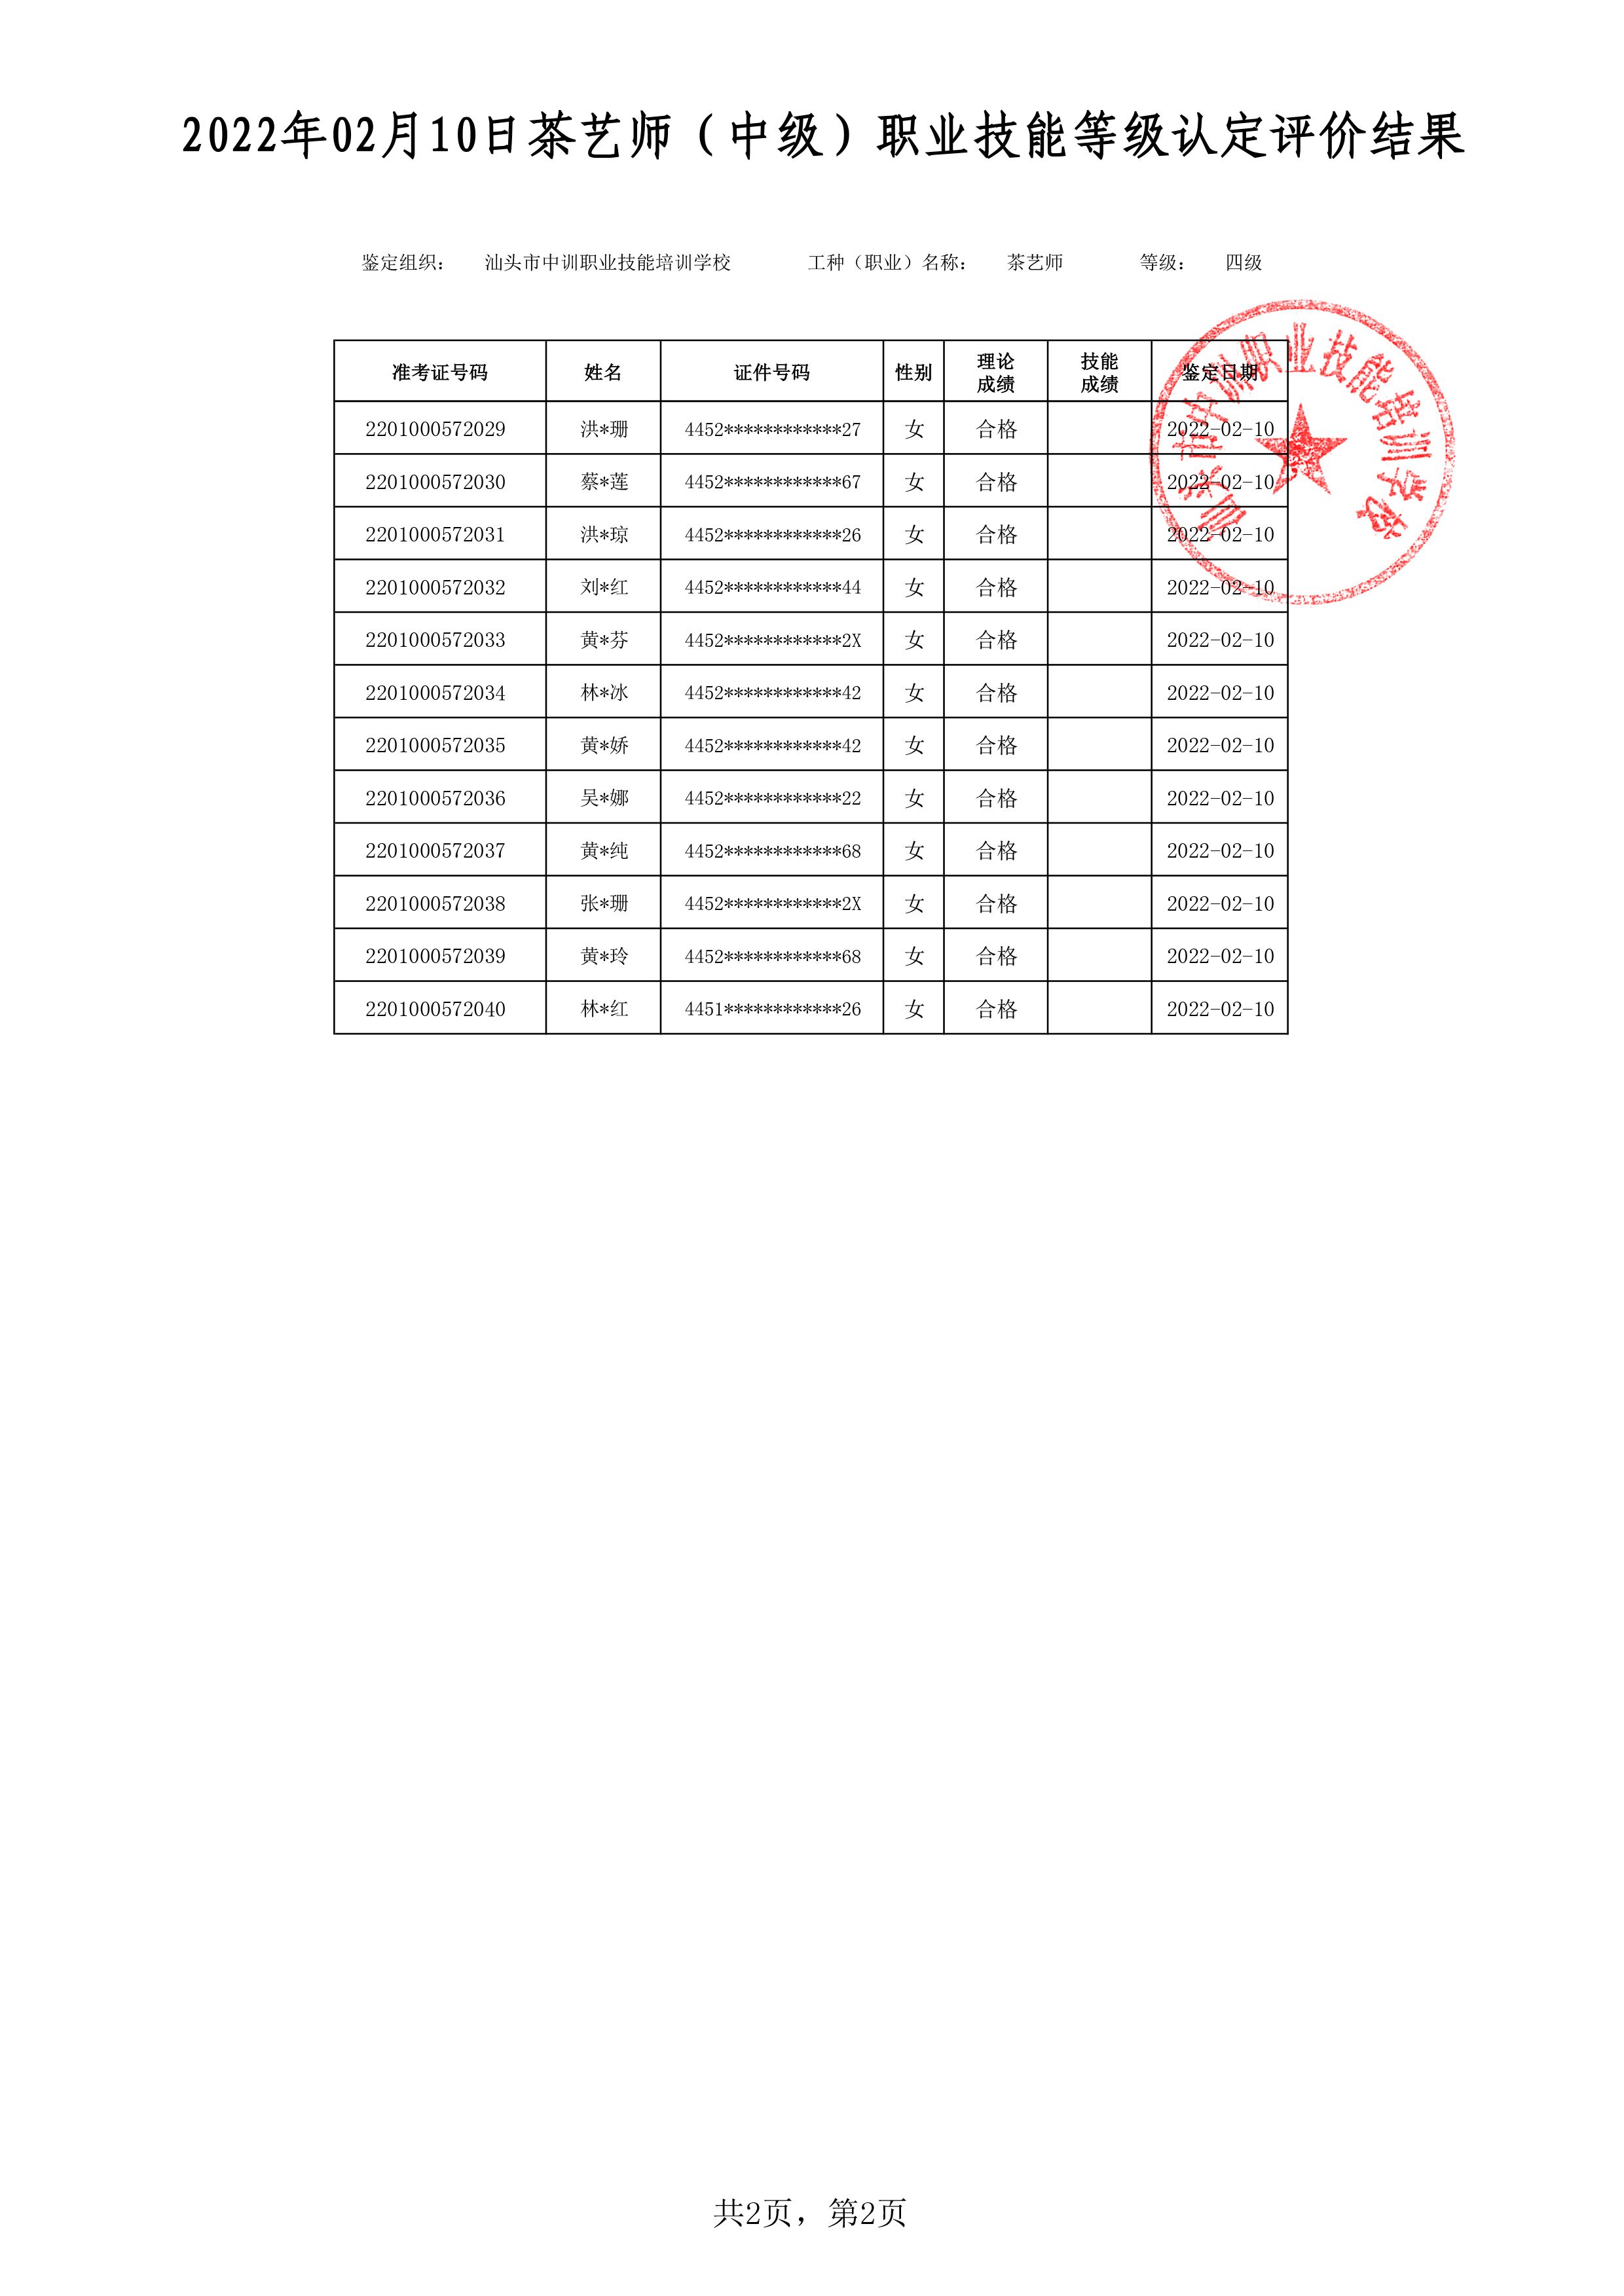 22-02-10四级茶艺师考试鉴定名册表 -2 副本.jpg